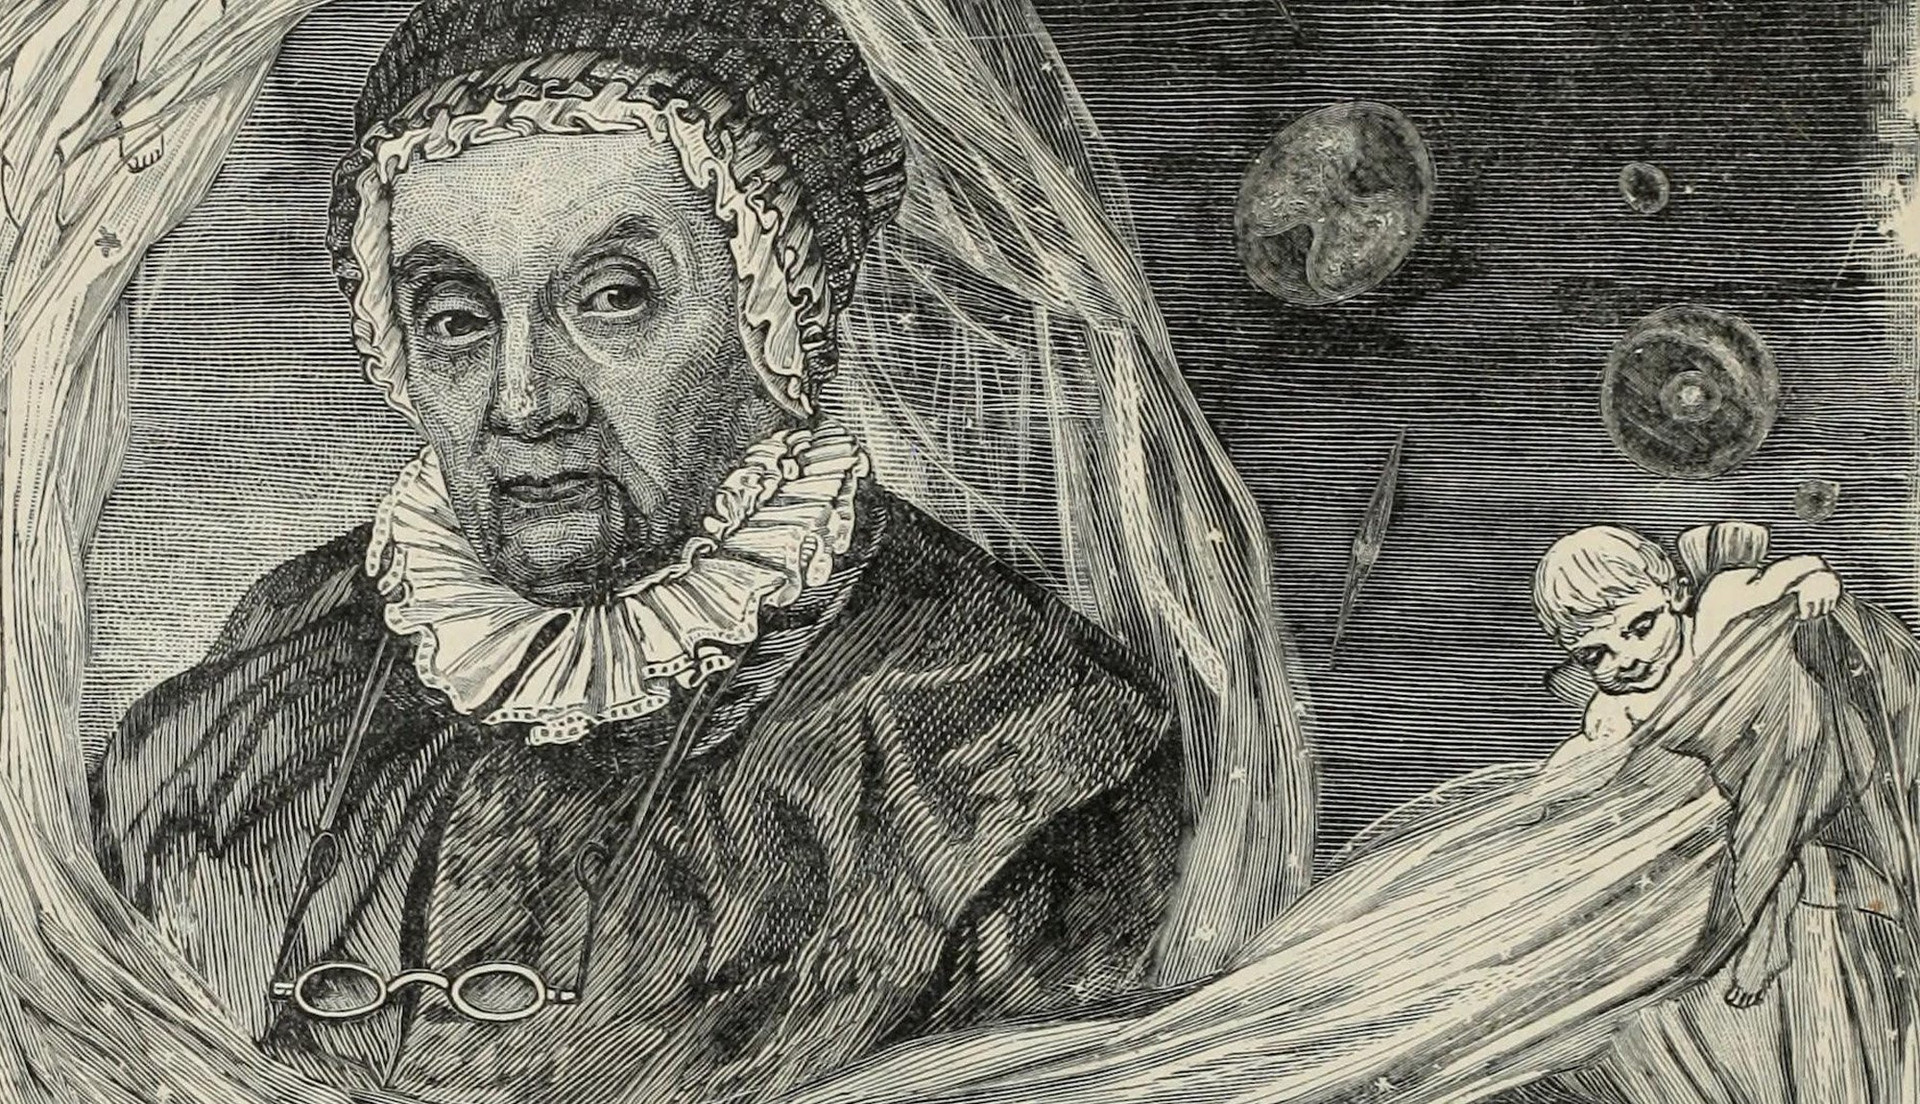 Năm 1787, nhờ phát hiện nhiều thiên thể mới và trợ giúp anh trai, Caroline Herschel được vua George III trả lương, trở thành nhà thiên văn nữ chuyên nghiệp